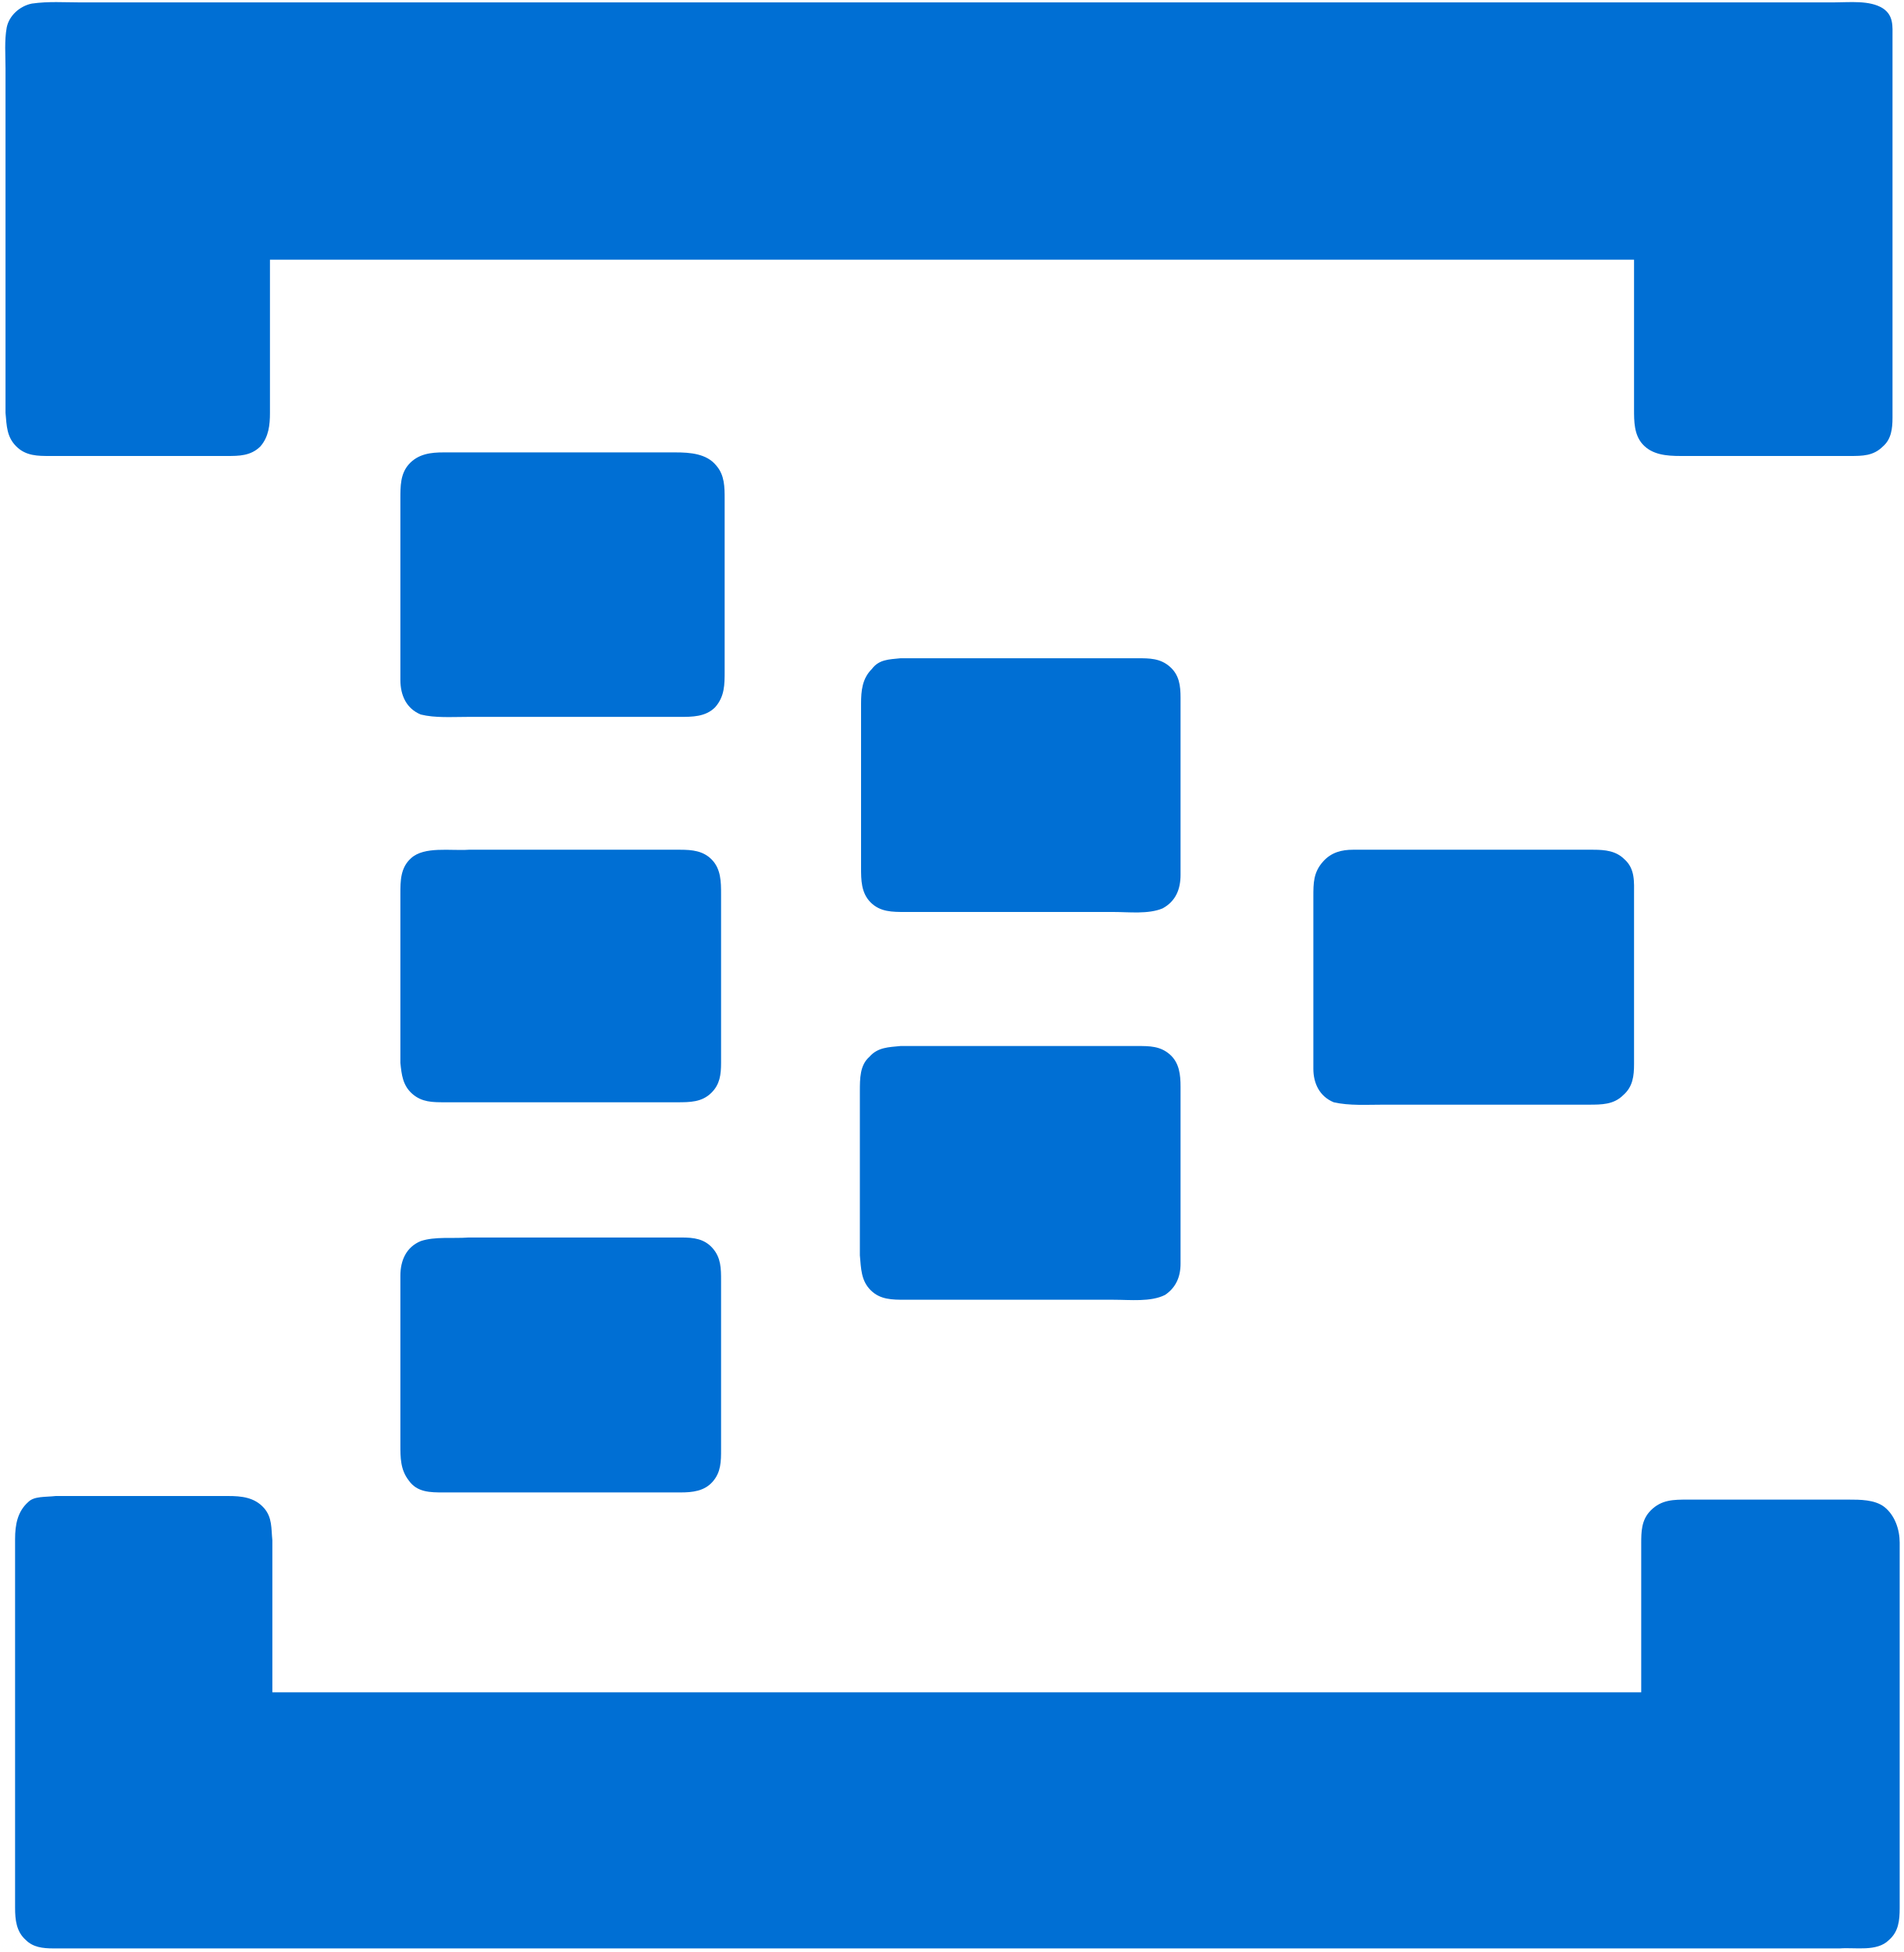 azure event hubs logo